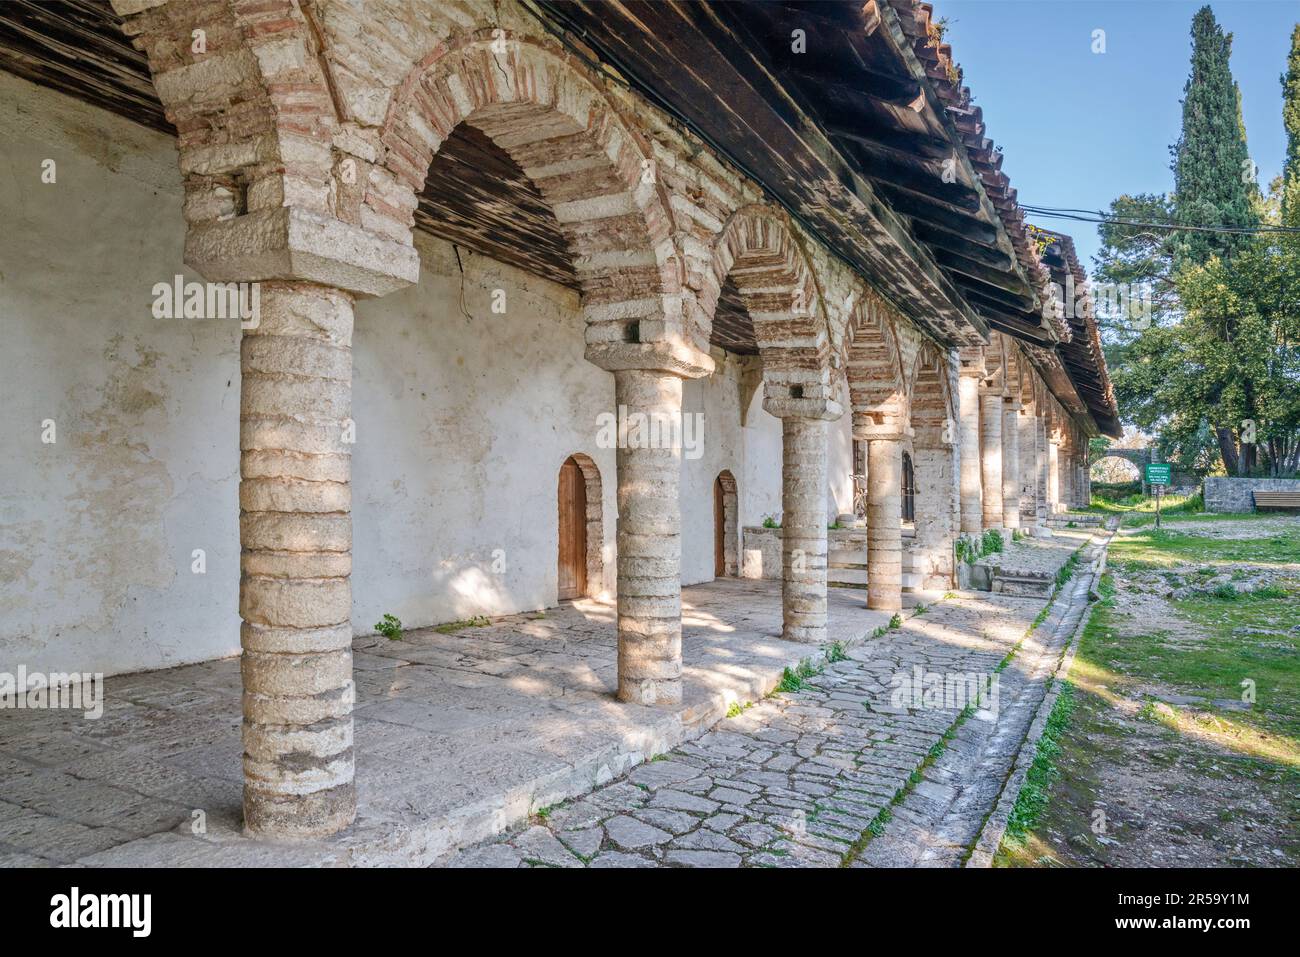 Gebäude in der Nähe des städtischen Ethnographischen Museums, der ehemaligen Aslan-Pascha-Moschee, im Grünkohl, osmanische Zitadelle in Ioannina, Region Epirus, Griechenland Stockfoto